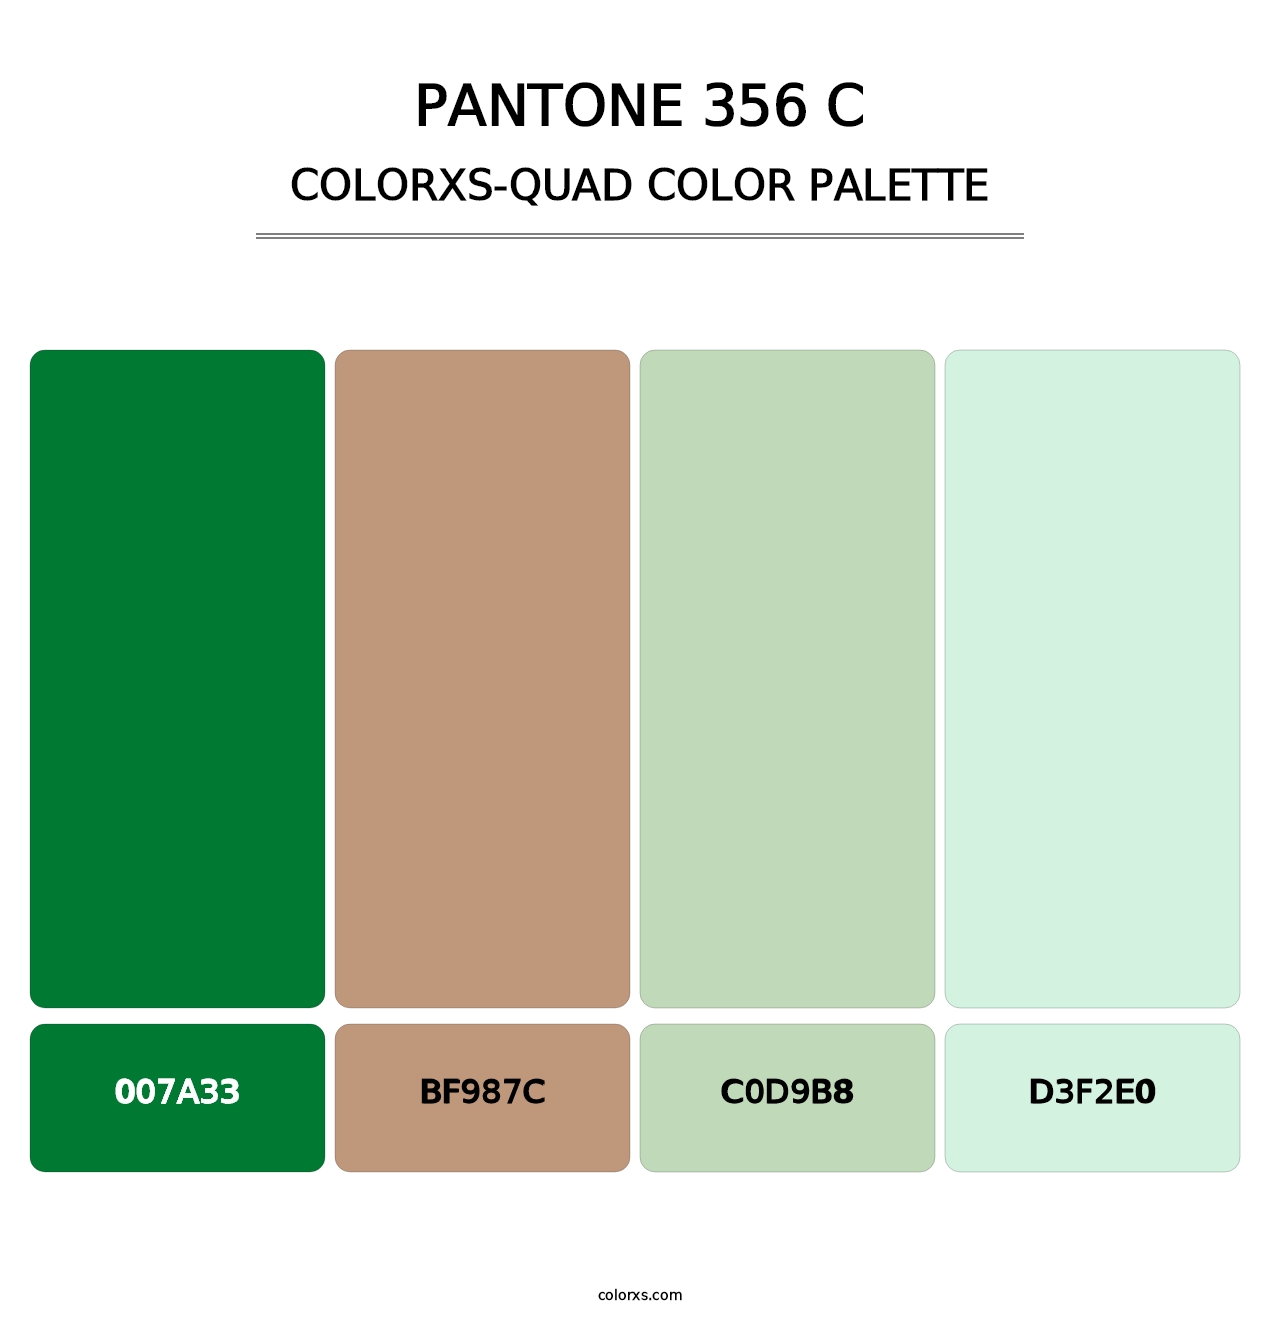 PANTONE 356 C - Colorxs Quad Palette